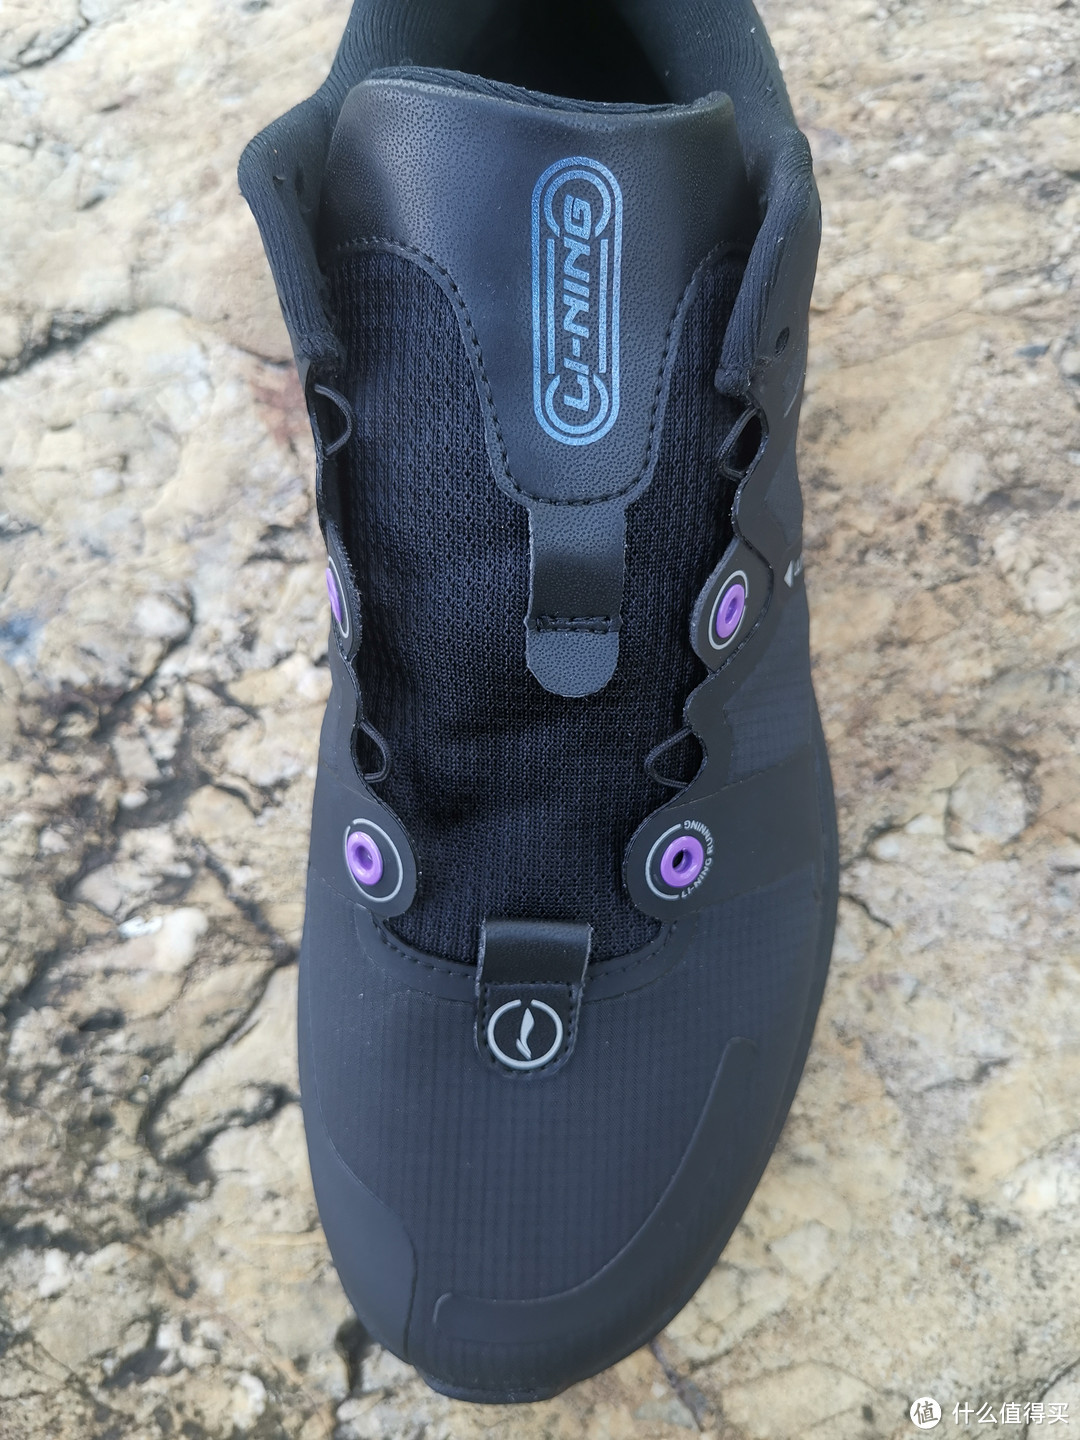 再来看一个完整的鞋面，紫色圆框位置的稳定系统 和  尼龙绳束紧系统交错进行